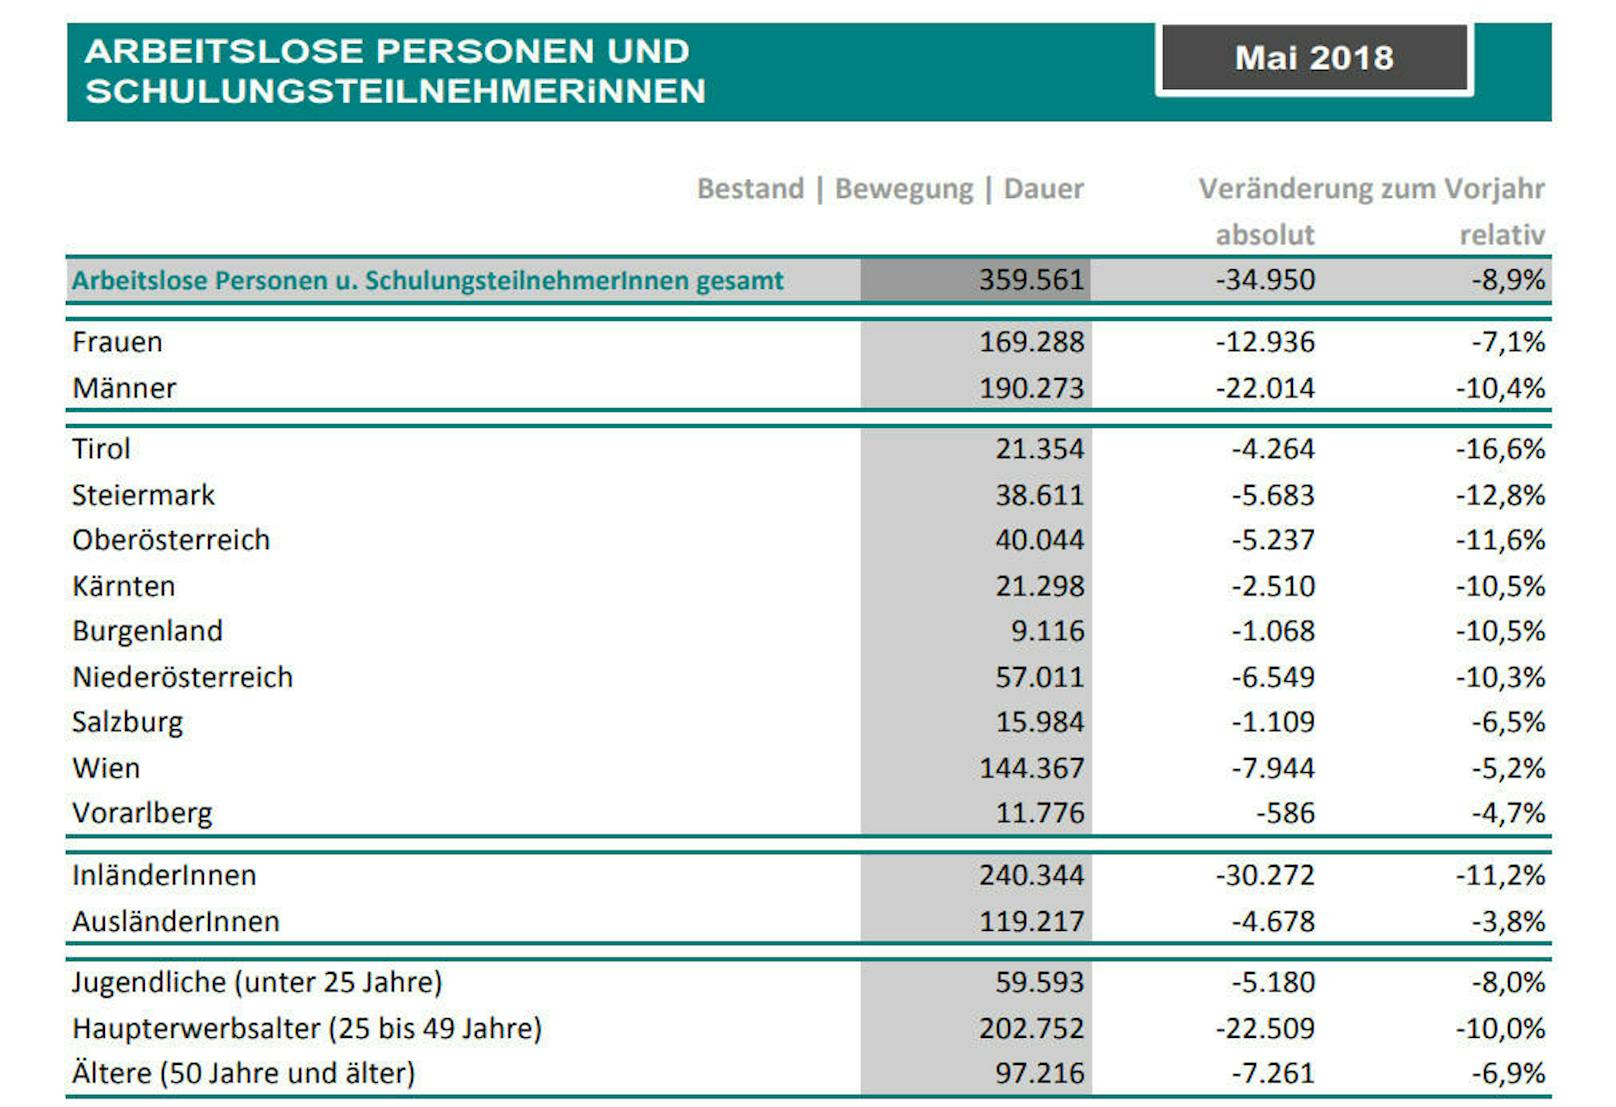 Im Mai gab es 359.561 arbeitslose Personen und Schulungsteilnehmer. Den höchsten Rückgang verzeichnete Tirol.